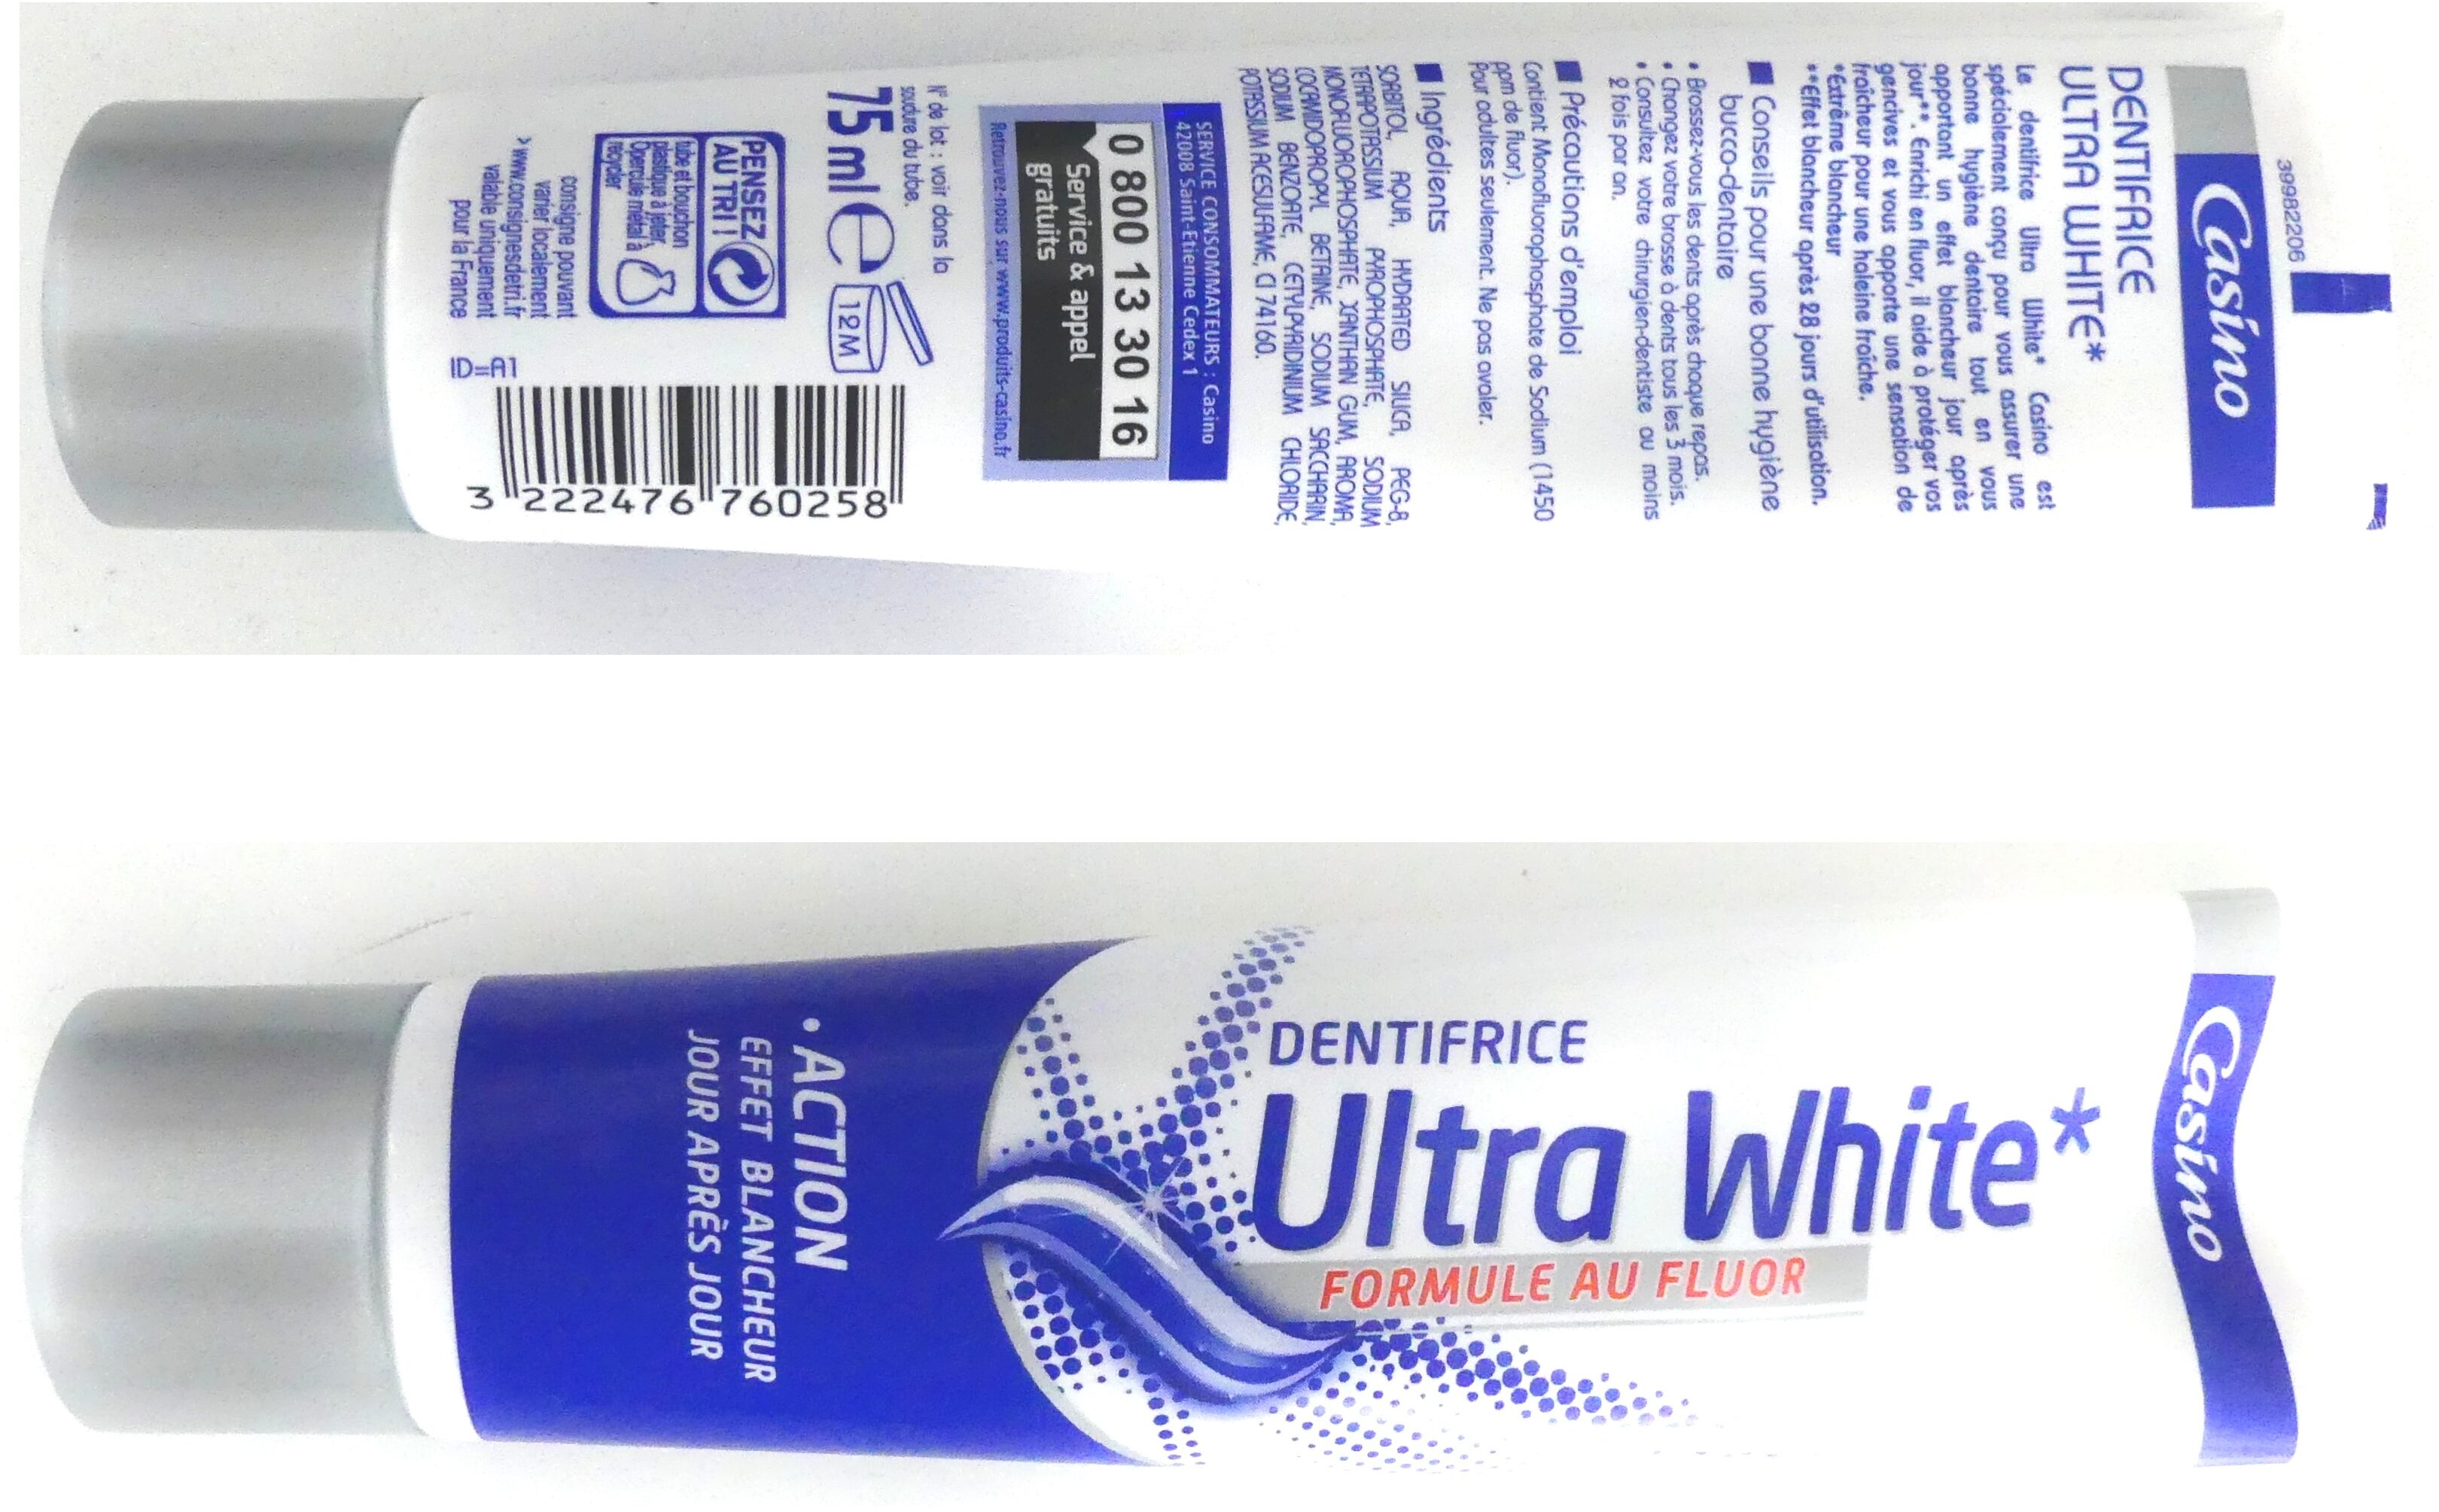 Dentifrice ultra white - Produkt - fr